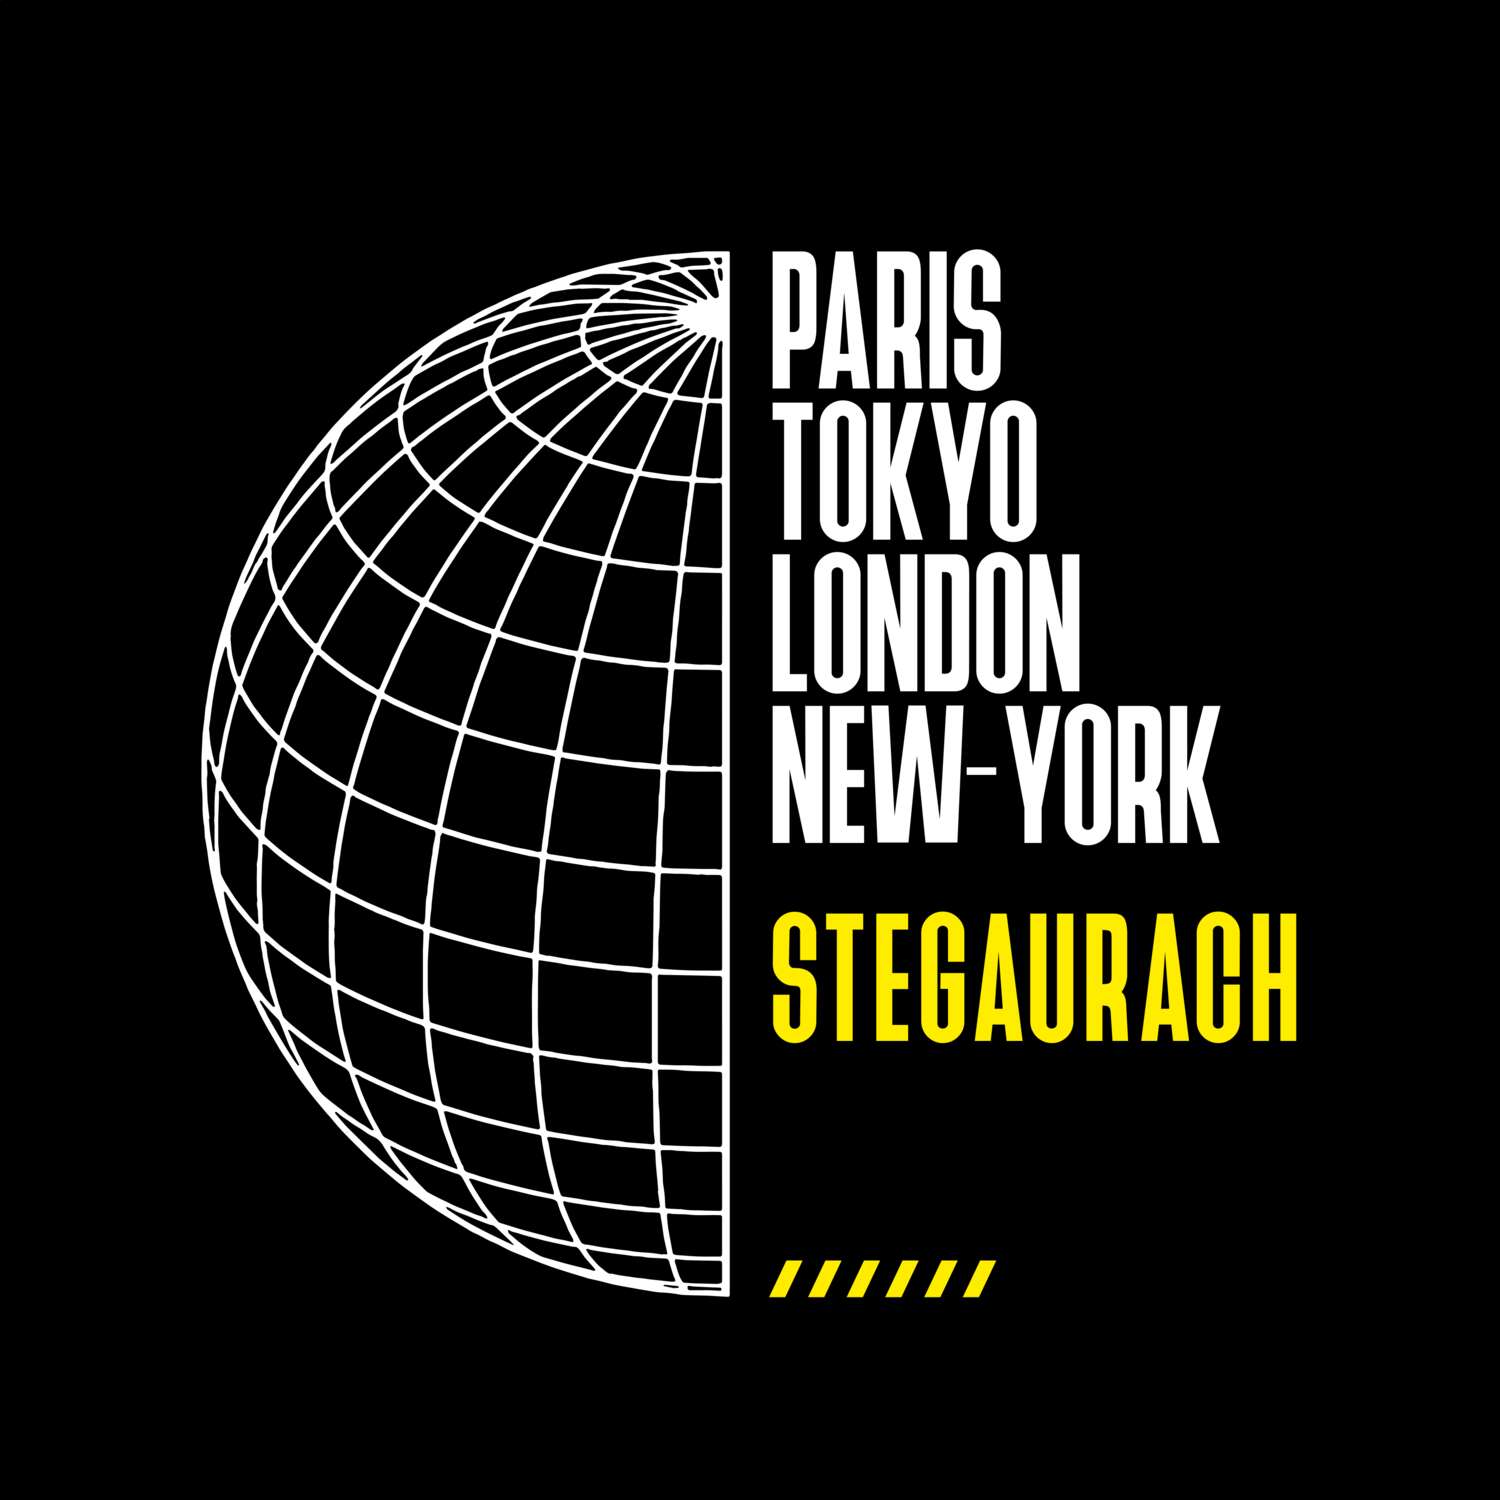 Stegaurach T-Shirt »Paris Tokyo London«